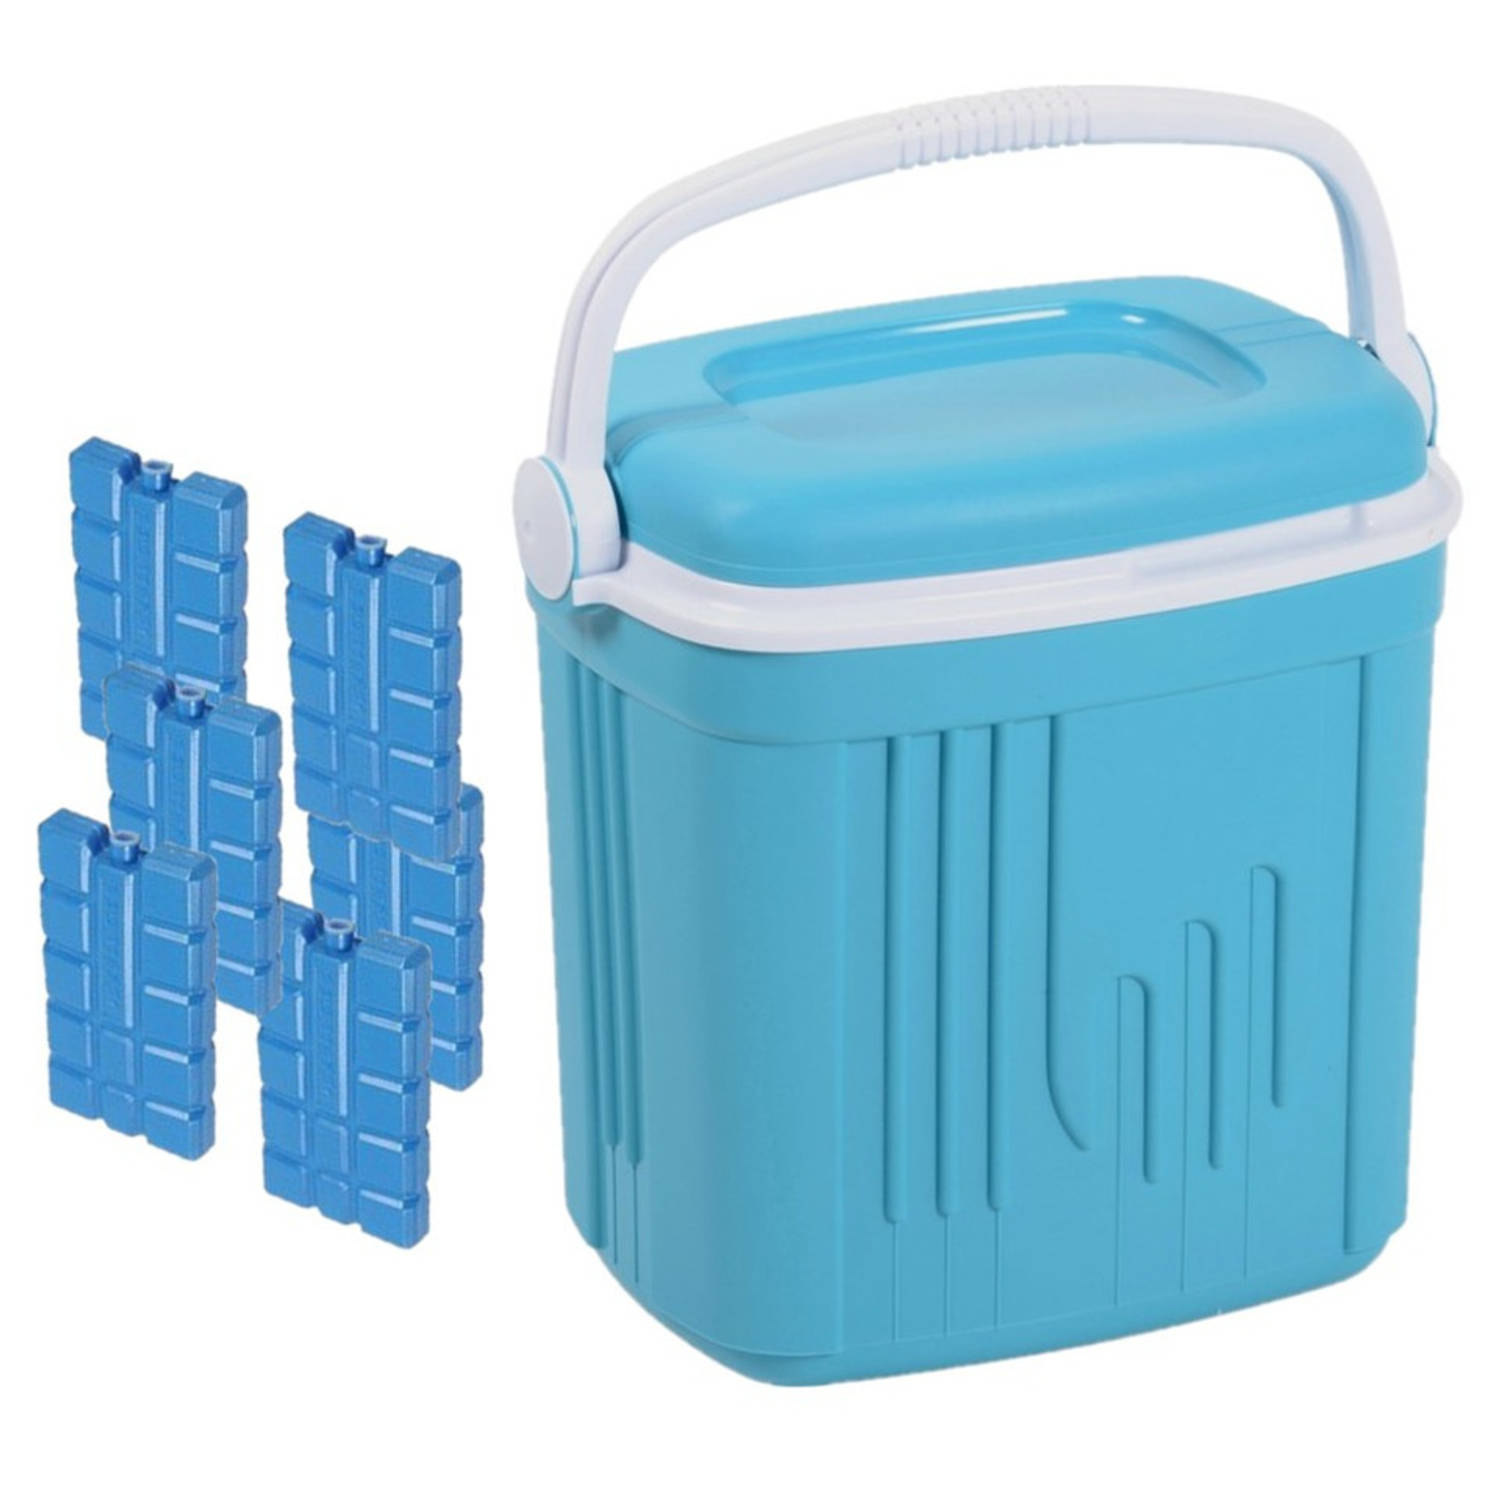 Voordelige normale blauwe koelbox 20 liter met 6x normale koelelementen Koelboxen